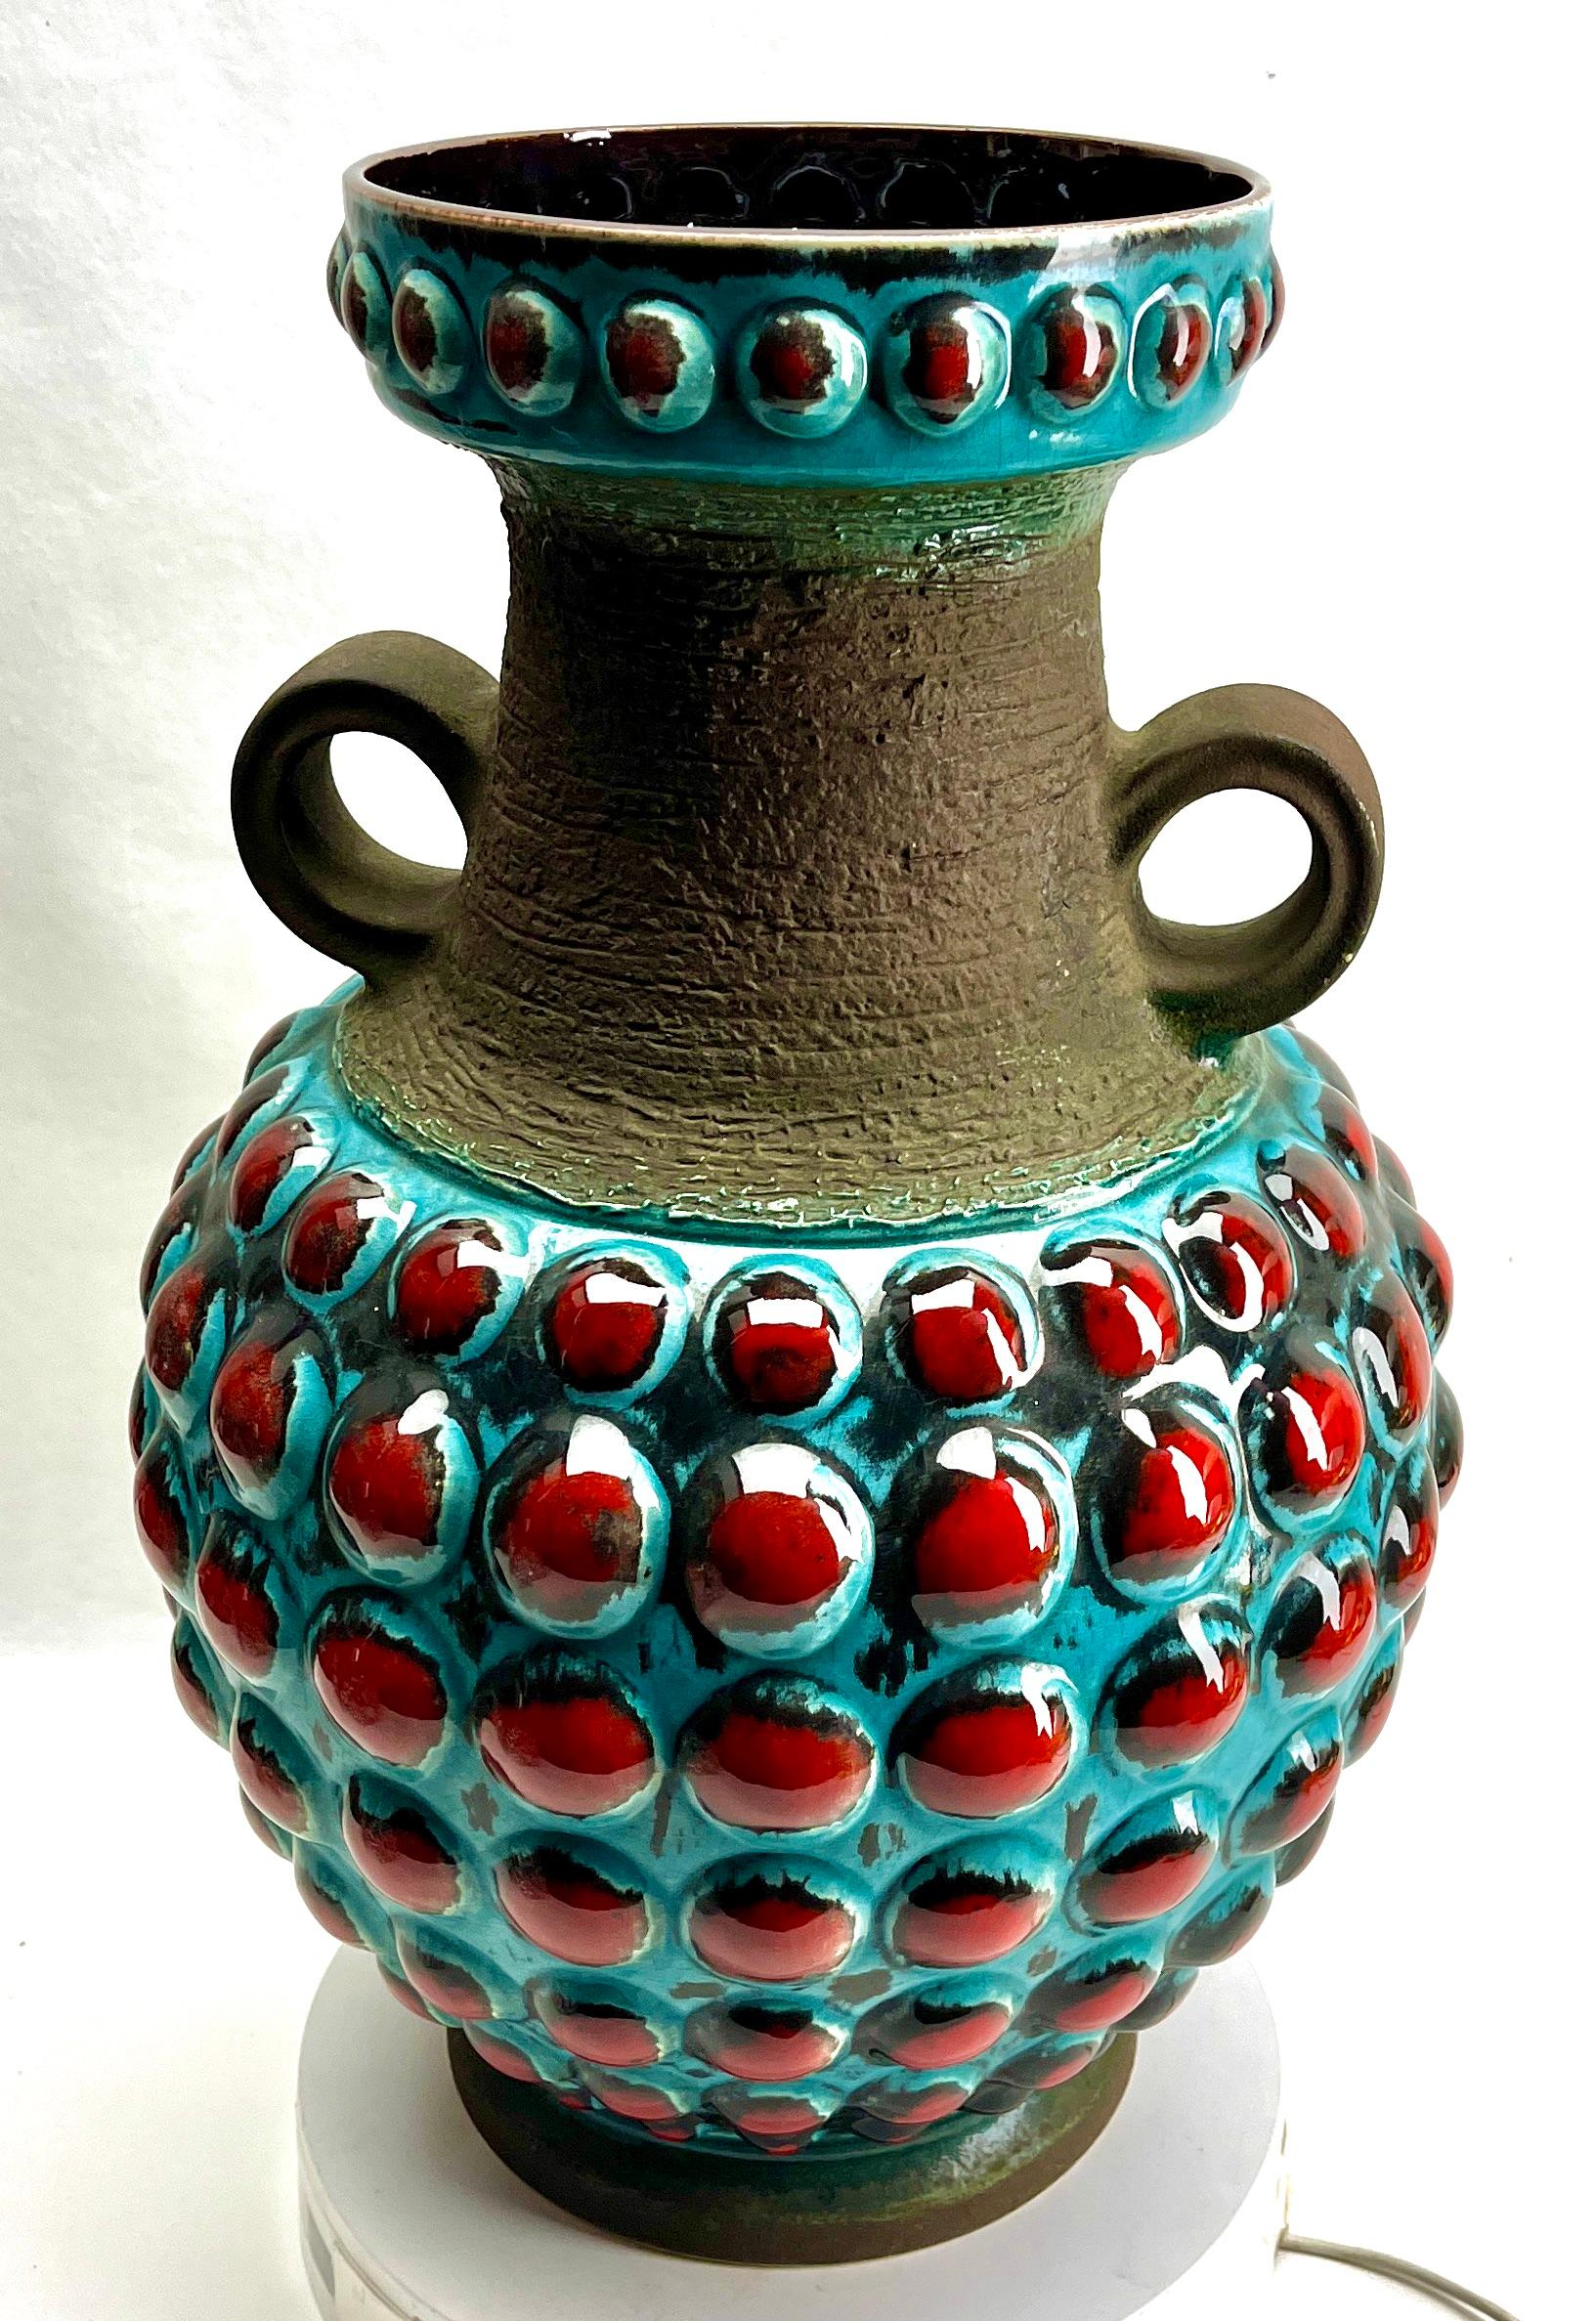 Diese original Vintage Bay Vase wurde in den 1970er Jahren in Deutschland hergestellt. Sie ist aus Keramik gefertigt.
Auf dem Boden ist die Vasenseriennummer 65-45 Handarbeit vermerkt.
Geradliniges und minimalistisches Design aus den 1960er Jahren.